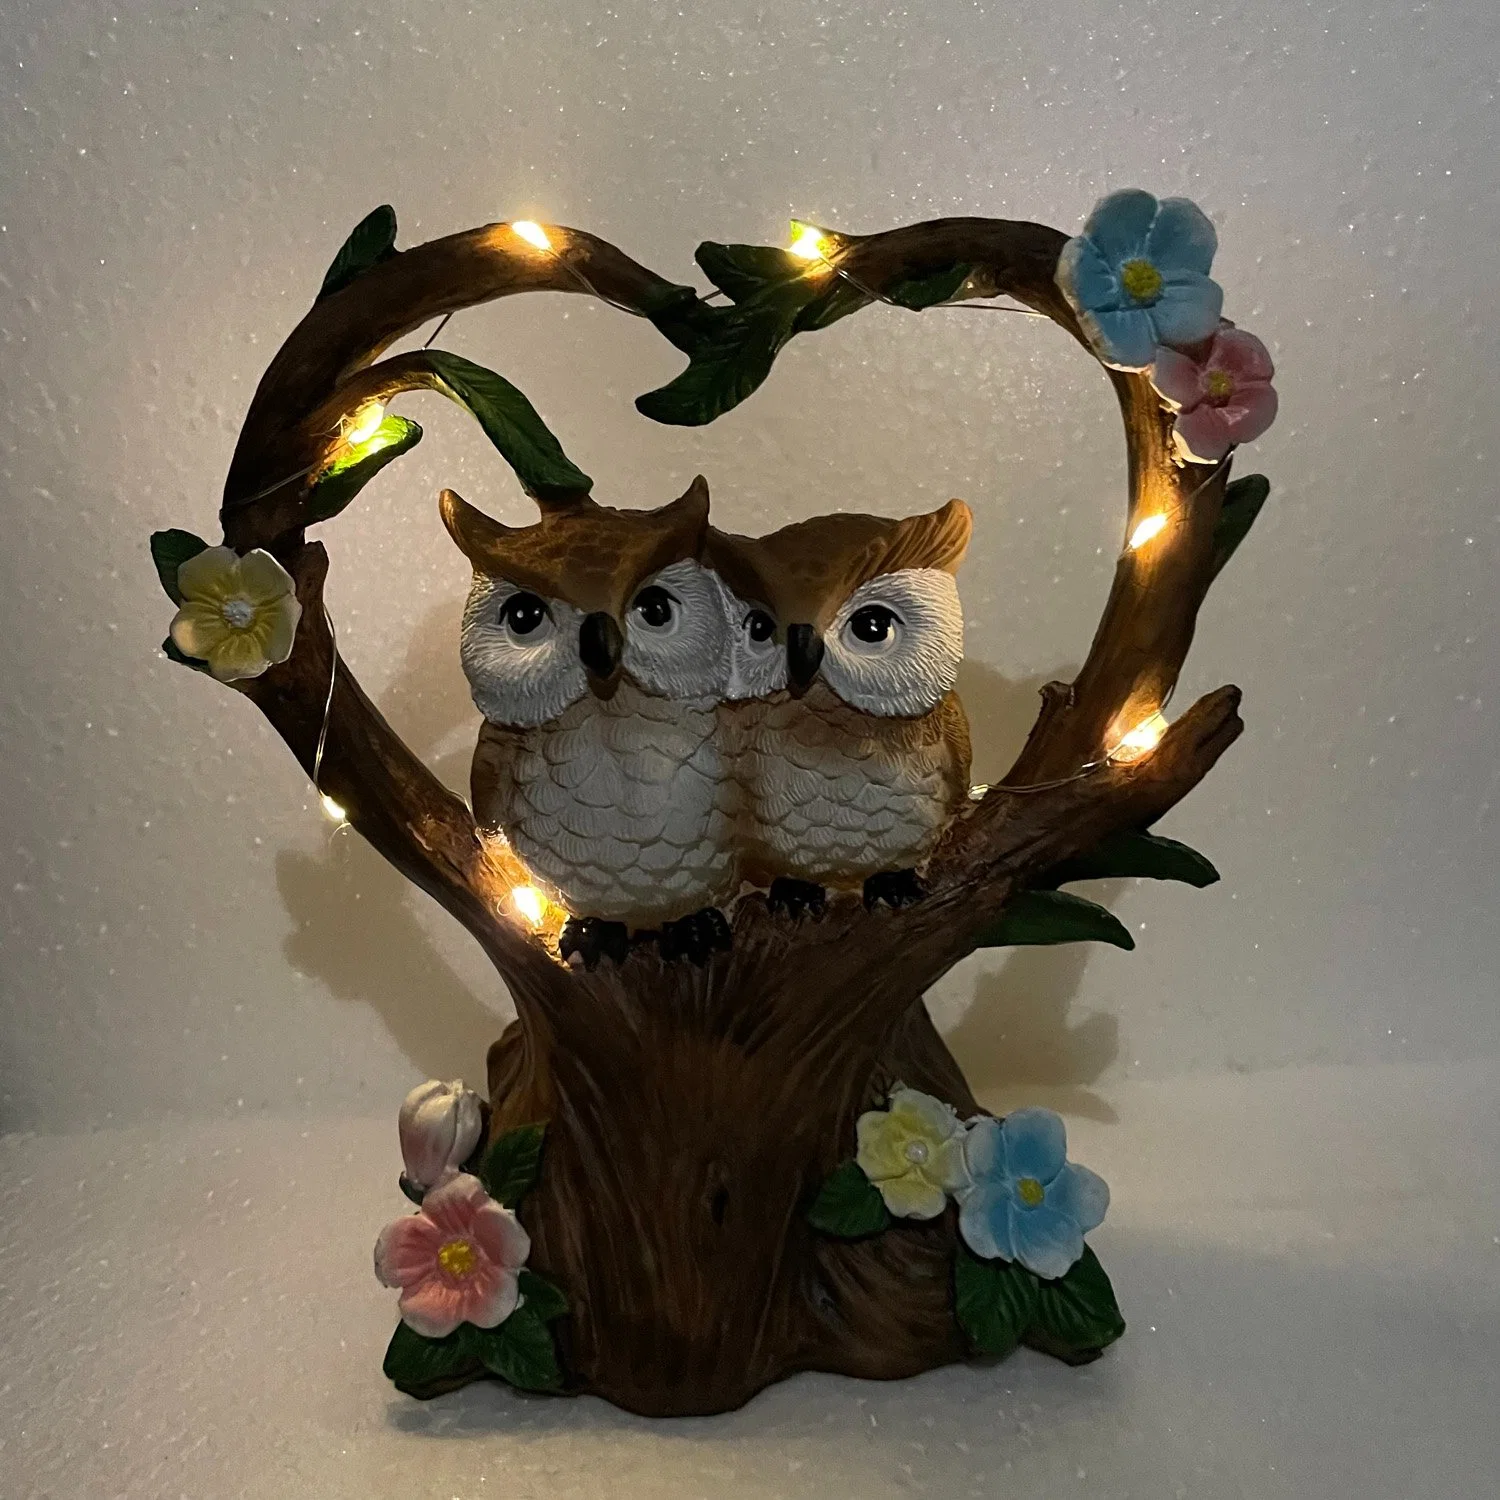 Creative Garden Resin Lovers Bird Ornaments Солнечная лампа Owl Garden Пейзаж день Святого Валентина Подарочные изделия